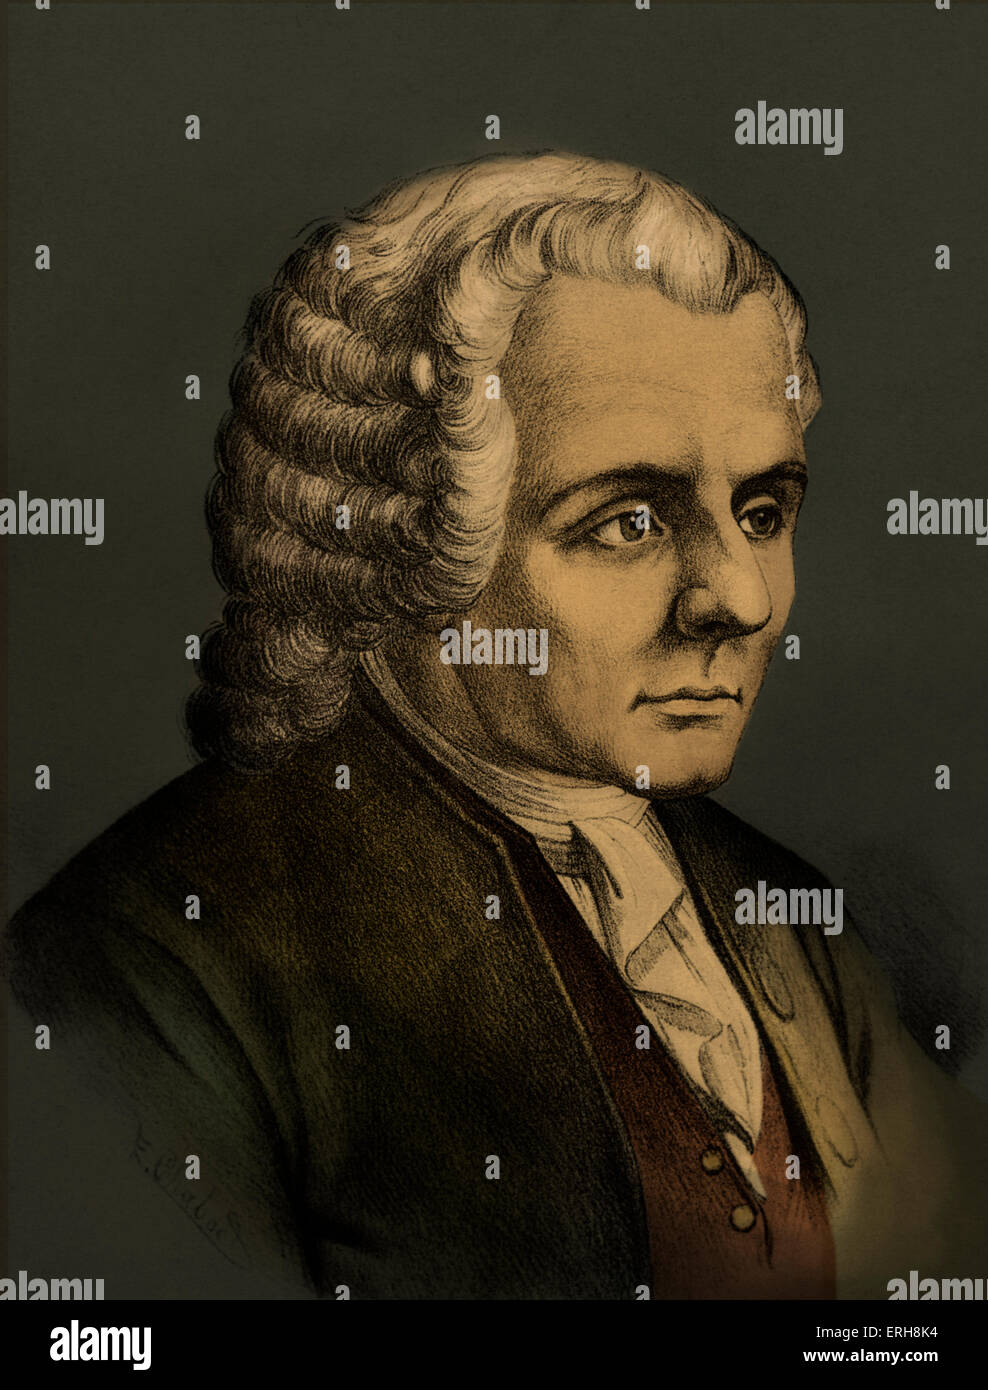 Jean-Jacques Rousseau - Swiss né philosophe français des Lumières. Ses idées politiques l'influence de la Révolution française. Banque D'Images